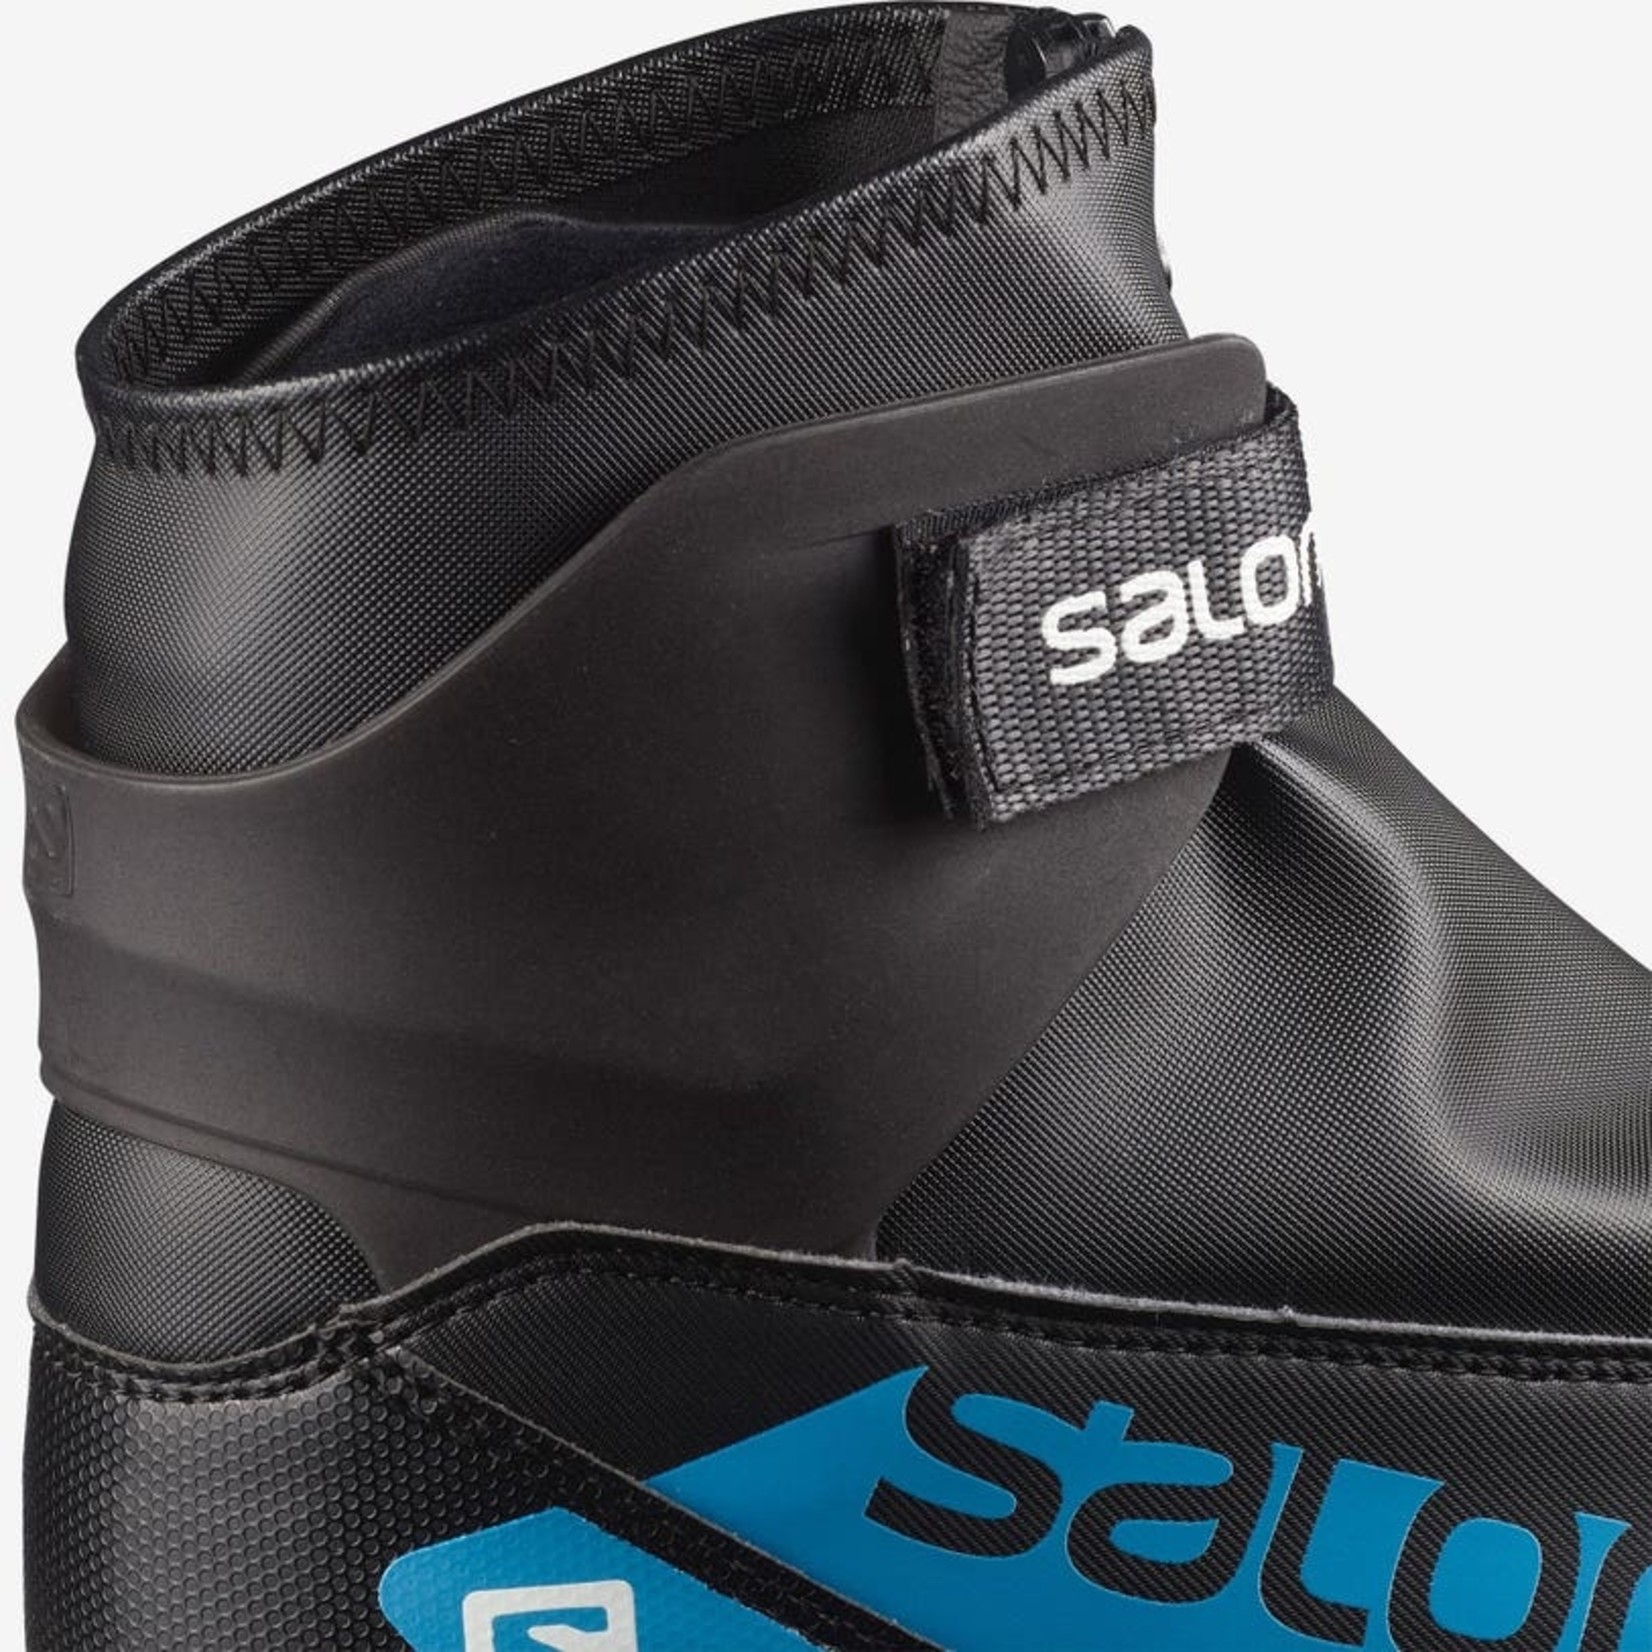 SALOMON Salomon R/Combi Nocturne Prolink Junior Boot 24/25